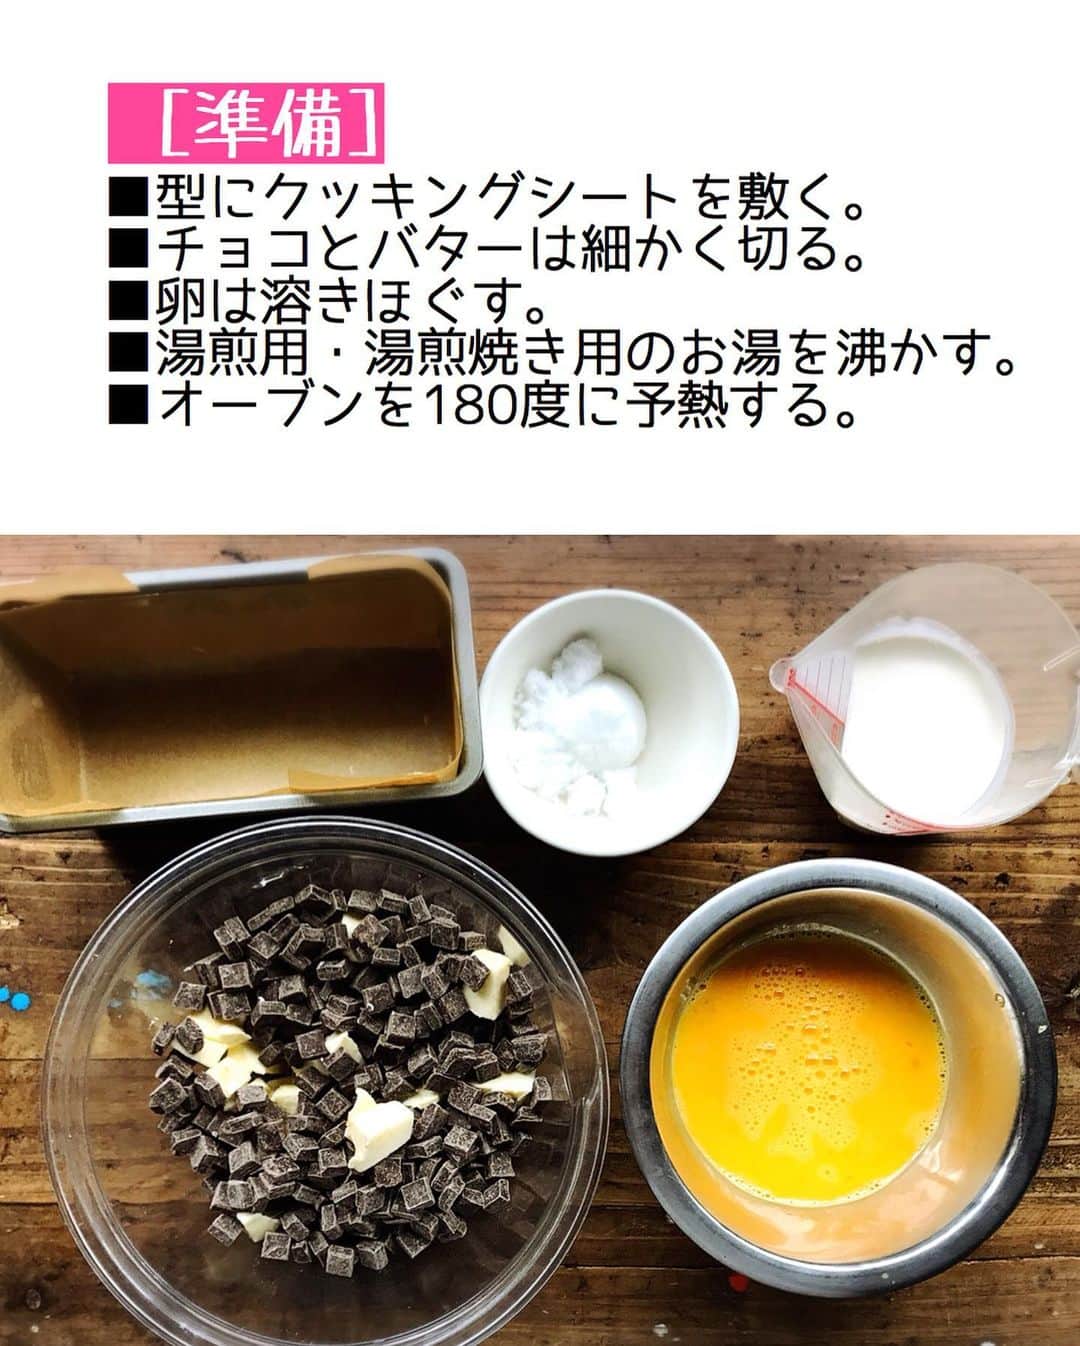 Mizuki【料理ブロガー・簡単レシピ】さんのインスタグラム写真 - (Mizuki【料理ブロガー・簡単レシピ】Instagram)「・﻿ 【#レシピ 】ーーーーーーー﻿ チョコ好きさんに捧ぐ！﻿ ♡超濃厚チョコテリーヌ♡﻿ ーーーーーーーーーーーーー﻿ ﻿ ﻿ ﻿ おはようございます(*^^*)﻿ ﻿ 今日は私のとっておきスイーツ﻿ \\チョコテリーヌ// ﻿ をご紹介させていただきます♩﻿ ﻿ 濃厚なチョコレート生地を﻿ しっとり焼き上げたチョコテリーヌ！﻿ 上質で香り高くとろける食感は﻿ まさに高級スイーツ♡﻿ ﻿ なのに作り方は超簡単(*´艸`)﻿ 生地はどんどん混ぜるだけ！！﻿ 材料は少なく工程も単純で﻿ 焼き時間も短いですよ〜♡﻿ ﻿ 冷蔵5日程保存できるので﻿ クリスマスやお正月にも﻿ よかったらお試し下さいね(*^^*)﻿ ﻿ ﻿ ﻿ ＿＿＿＿＿＿＿＿＿＿＿＿＿＿＿＿＿＿＿＿﻿ 【18cmパウンド型1台分】﻿ チョコレート(ブラック)...200g﻿ 無塩バター...100g﻿ 砂糖...大2﻿ 卵...3個﻿ 生クリーム...50ml﻿ ココアパウダー...適量﻿ ﻿ ﻿ (準備)型にクッキングシートを敷く。チョコとバターは細かく切る。卵は溶きほぐす。湯煎用・湯煎焼き用のお湯を沸かす。オーブンを180度に予熱する。﻿ ﻿ 1.チョコとバターをボウルに入れ、湯煎にかけて溶かす。﻿ 2. (湯煎にかけたまま)砂糖を加えて混ぜ、続けて溶き卵を少しずつ加え、その都度よく混ぜる。最後に生クリームも加えて混ぜる。﻿ 3. 生地を型に注ぎ、熱湯を注いだバット(天板)に乗せ、予熱したオーブンで18〜20分湯煎焼きする。(焼き上がり→中はフルフルの状態でOK!)﻿ 4.型に入れたまま冷まし、冷蔵庫で一晩以上しっかり冷やし、仕上げにココアを振る。﻿ ￣￣￣￣￣￣￣￣￣￣￣￣￣￣￣￣￣￣￣￣﻿ ﻿ ﻿ ﻿ 《ポイント》﻿ ♦︎チョコとバターは軽くレンチンしてから湯煎にかけると早く溶けます♩﻿ ♦︎生地作りは終始湯煎にかけたまま行って下さい♩﻿ ♦︎焼き上がりは中がフルフルの状態です！固まる程焼いてしまうと焼き過ぎなので注意して下さいね☆﻿ ♦︎一晩以上しっかり冷やして下さい♩冷蔵庫で5日は保存できますよ♩﻿ ♦︎ナイフを温めると綺麗に切れる&断面がとろけて美味しそうに♩﻿ ﻿ ﻿ ﻿ ﻿ ﻿ ﻿ ﻿ ﻿ 📕新刊発売中📕﻿ 【ラクしておいしい！#1品晩ごはん 】﻿ ￣￣￣￣￣￣￣￣￣￣￣￣￣￣￣￣￣﻿ 私たちだってヘトヘトな日がある•••﻿ 毎日何品も作っていられない•••﻿ もうごはんに悩みたくない😢﻿ そんな時、1品ごはんはいかがでしょう？﻿ というご提案です✨﻿ ﻿ 【1品ごはん】は﻿ 副菜いらずで全てがシンプル！﻿ ￣￣￣￣￣￣￣￣￣￣￣￣￣￣￣￣￣￣﻿ 一品つくるだけでいいから﻿ 献立を考えなくてよし！﻿ ￣￣￣￣￣￣￣￣￣￣￣￣￣￣￣￣￣￣﻿ 悩まない、疲れない、﻿ 気力や時間がなくてもなんとかなる！﻿ ￣￣￣￣￣￣￣￣￣￣￣￣￣￣￣￣￣￣﻿ そんな頼りになる﻿ 便利なお助けごはんです☺️💕﻿ (ハイライトに🔗貼っています✨)﻿ ￣￣￣￣￣￣￣￣￣￣￣￣￣￣￣￣￣﻿ ﻿ ﻿ ﻿ ﻿ ﻿ ⭐️発売中⭐️﻿ ＿＿＿＿＿＿＿＿＿＿＿＿＿＿＿＿＿＿﻿ しんどくない献立、考えました♩﻿ \15分でいただきます/﻿ 📕#Mizukiの2品献立 📕﻿ ﻿ 和食をもっとカジュアルに♩﻿ \毎日のごはんがラクになる/﻿ 📘#Mizukiの今どき和食 📘﻿ ﻿ ホケミレシピの決定版♩﻿ \はじめてでも失敗しない/﻿ 📙ホットケーキミックスのお菓子 📙﻿ ﻿ NHKまる得マガジンテキスト☆﻿ ホットケーキミックスで﻿ 📗絶品おやつ&意外なランチ📗﻿ ￣￣￣￣￣￣￣￣￣￣￣￣￣￣￣￣￣￣﻿ ﻿ ﻿ ﻿ ＿＿＿＿＿＿＿＿＿＿＿＿＿＿＿＿＿＿﻿ レシピを作って下さった際や﻿ レシピ本についてのご投稿には﻿ タグ付け( @mizuki_31cafe )して﻿ お知らせいただけると嬉しいです😊💕﻿ ￣￣￣￣￣￣￣￣￣￣￣￣￣￣￣￣￣￣﻿ ﻿ ﻿ ﻿ ﻿ #チョコレートケーキ#チョコテリーヌ#クリスマス#Mizuki#簡単レシピ#時短レシピ#節約レシピ#料理#フーディーテーブル#マカロニメイト#おうちごはん#デリスタグラマー#料理好きな人と繋がりたい#食べ物#料理記録#おうちごはんlover#写真好きな人と繋がりたい#foodpic#cooking#recipe#lin_stagrammer#foodporn#yummy#f52grams#チョコテリーヌm」12月23日 7時00分 - mizuki_31cafe